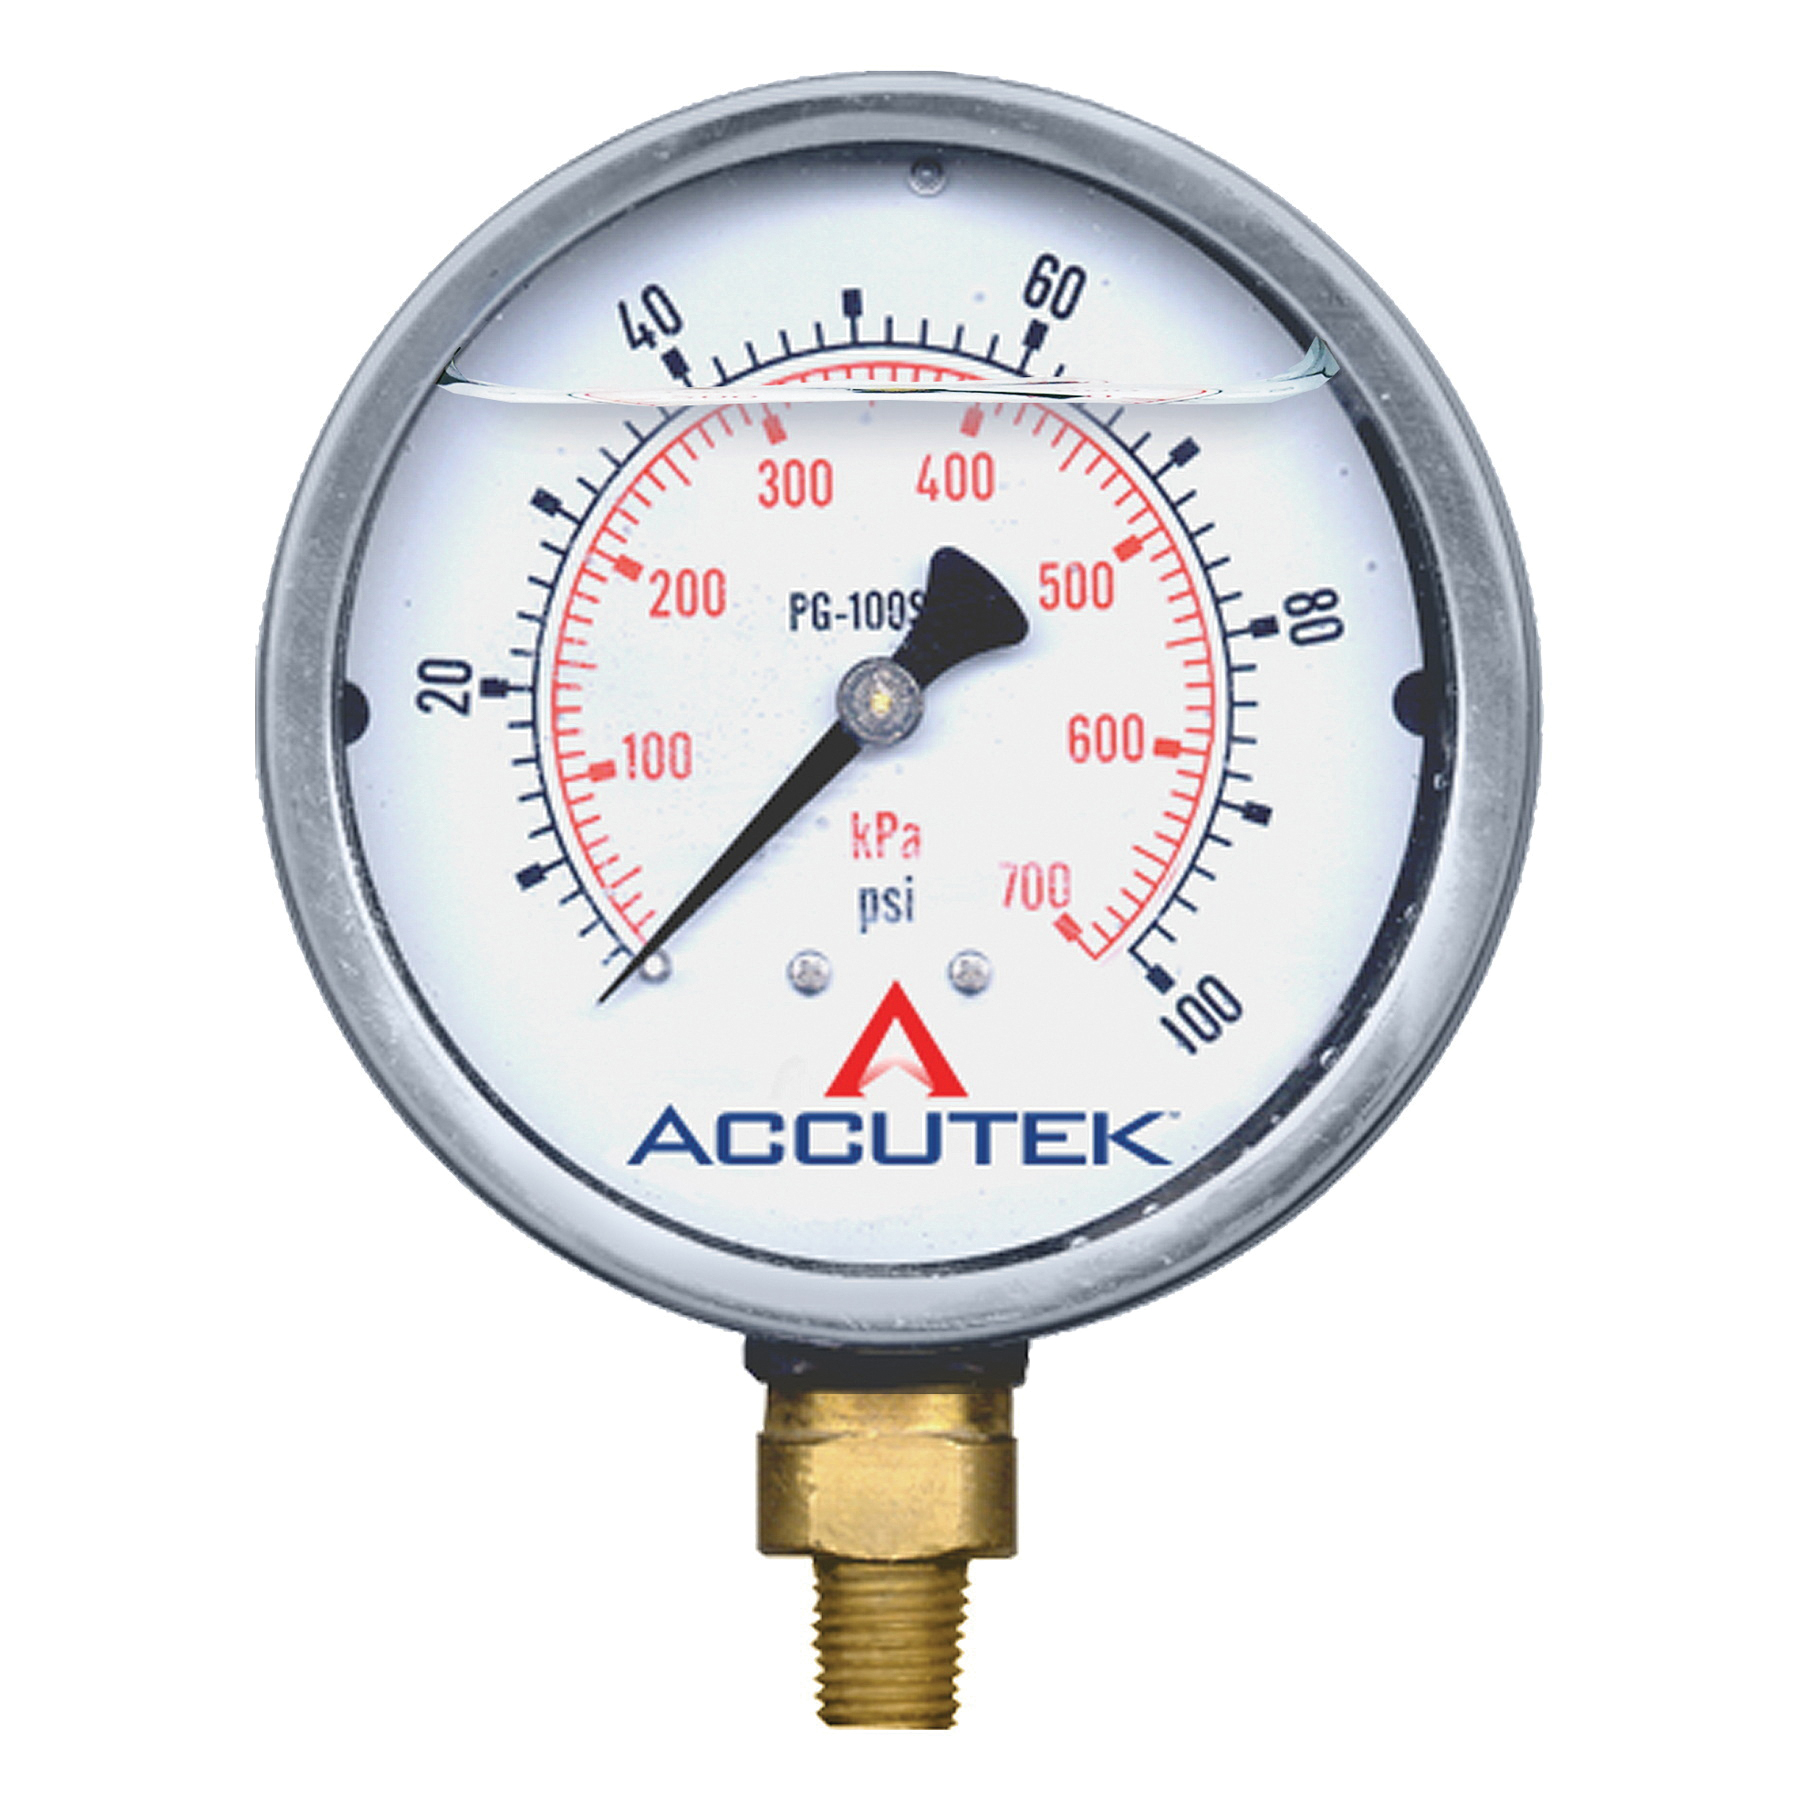 Boshart THW8-S2-280 Hot Water Straight Thermometer